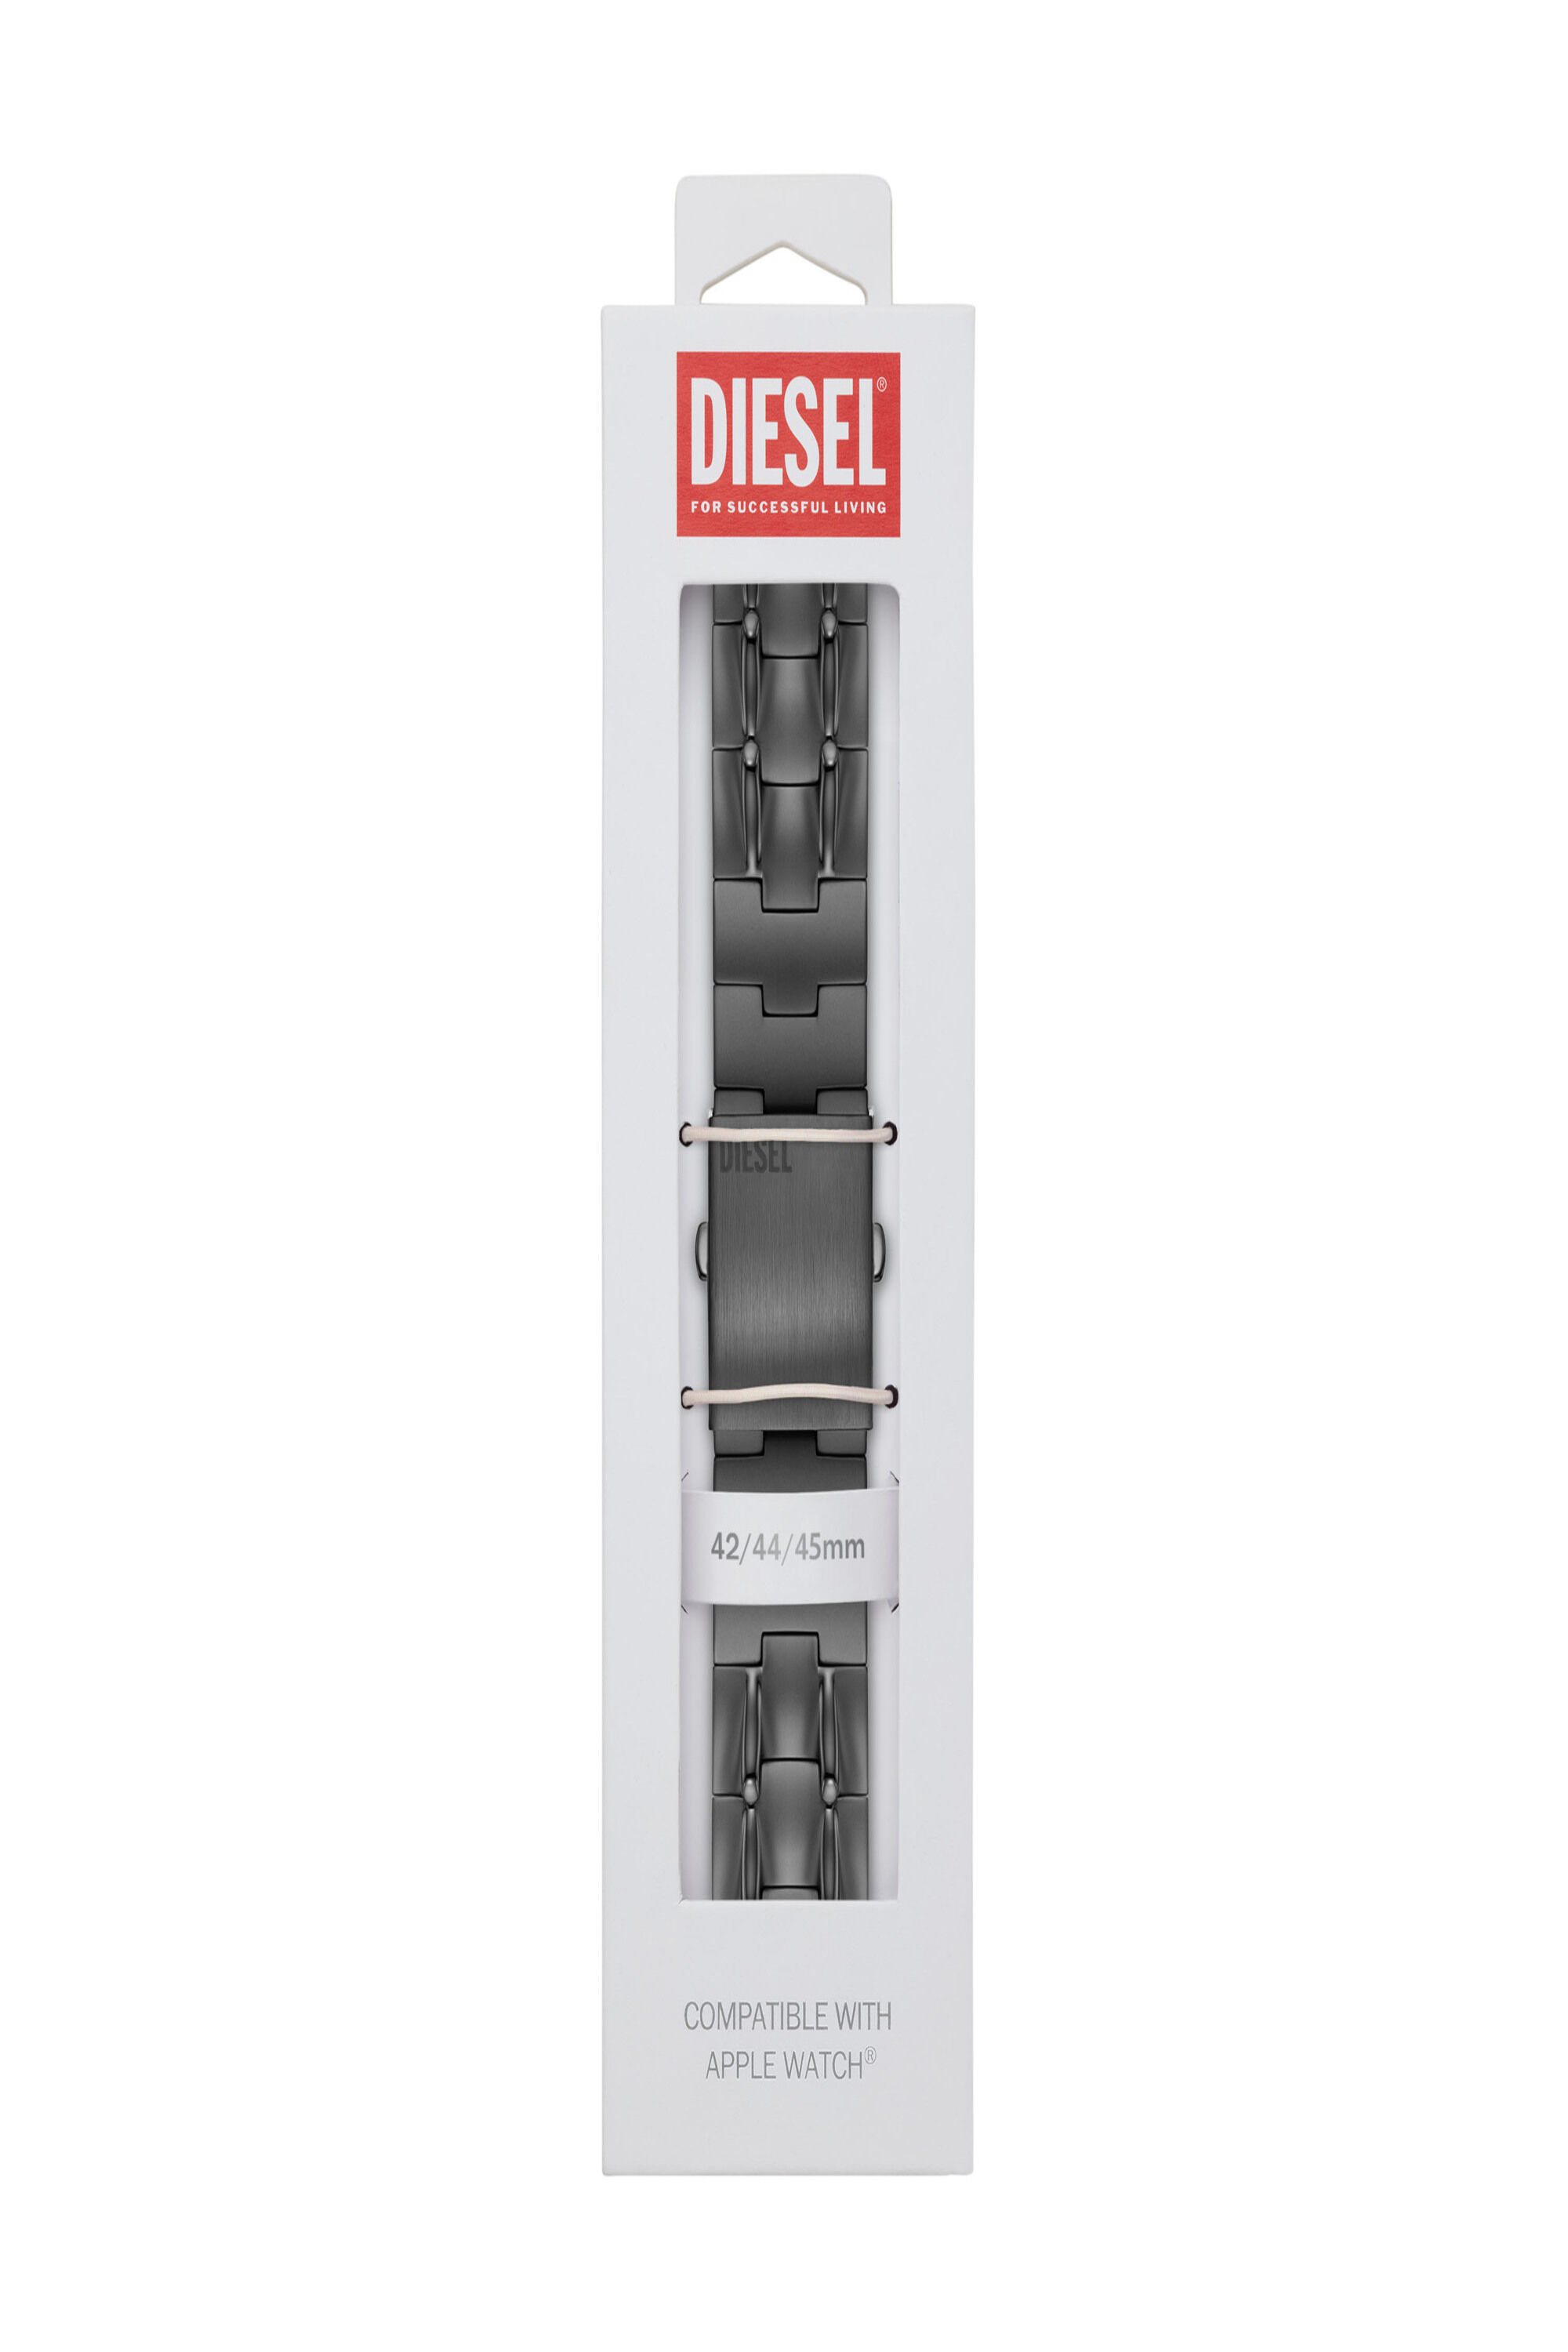 Diesel - DSS0015, Grau - Image 2